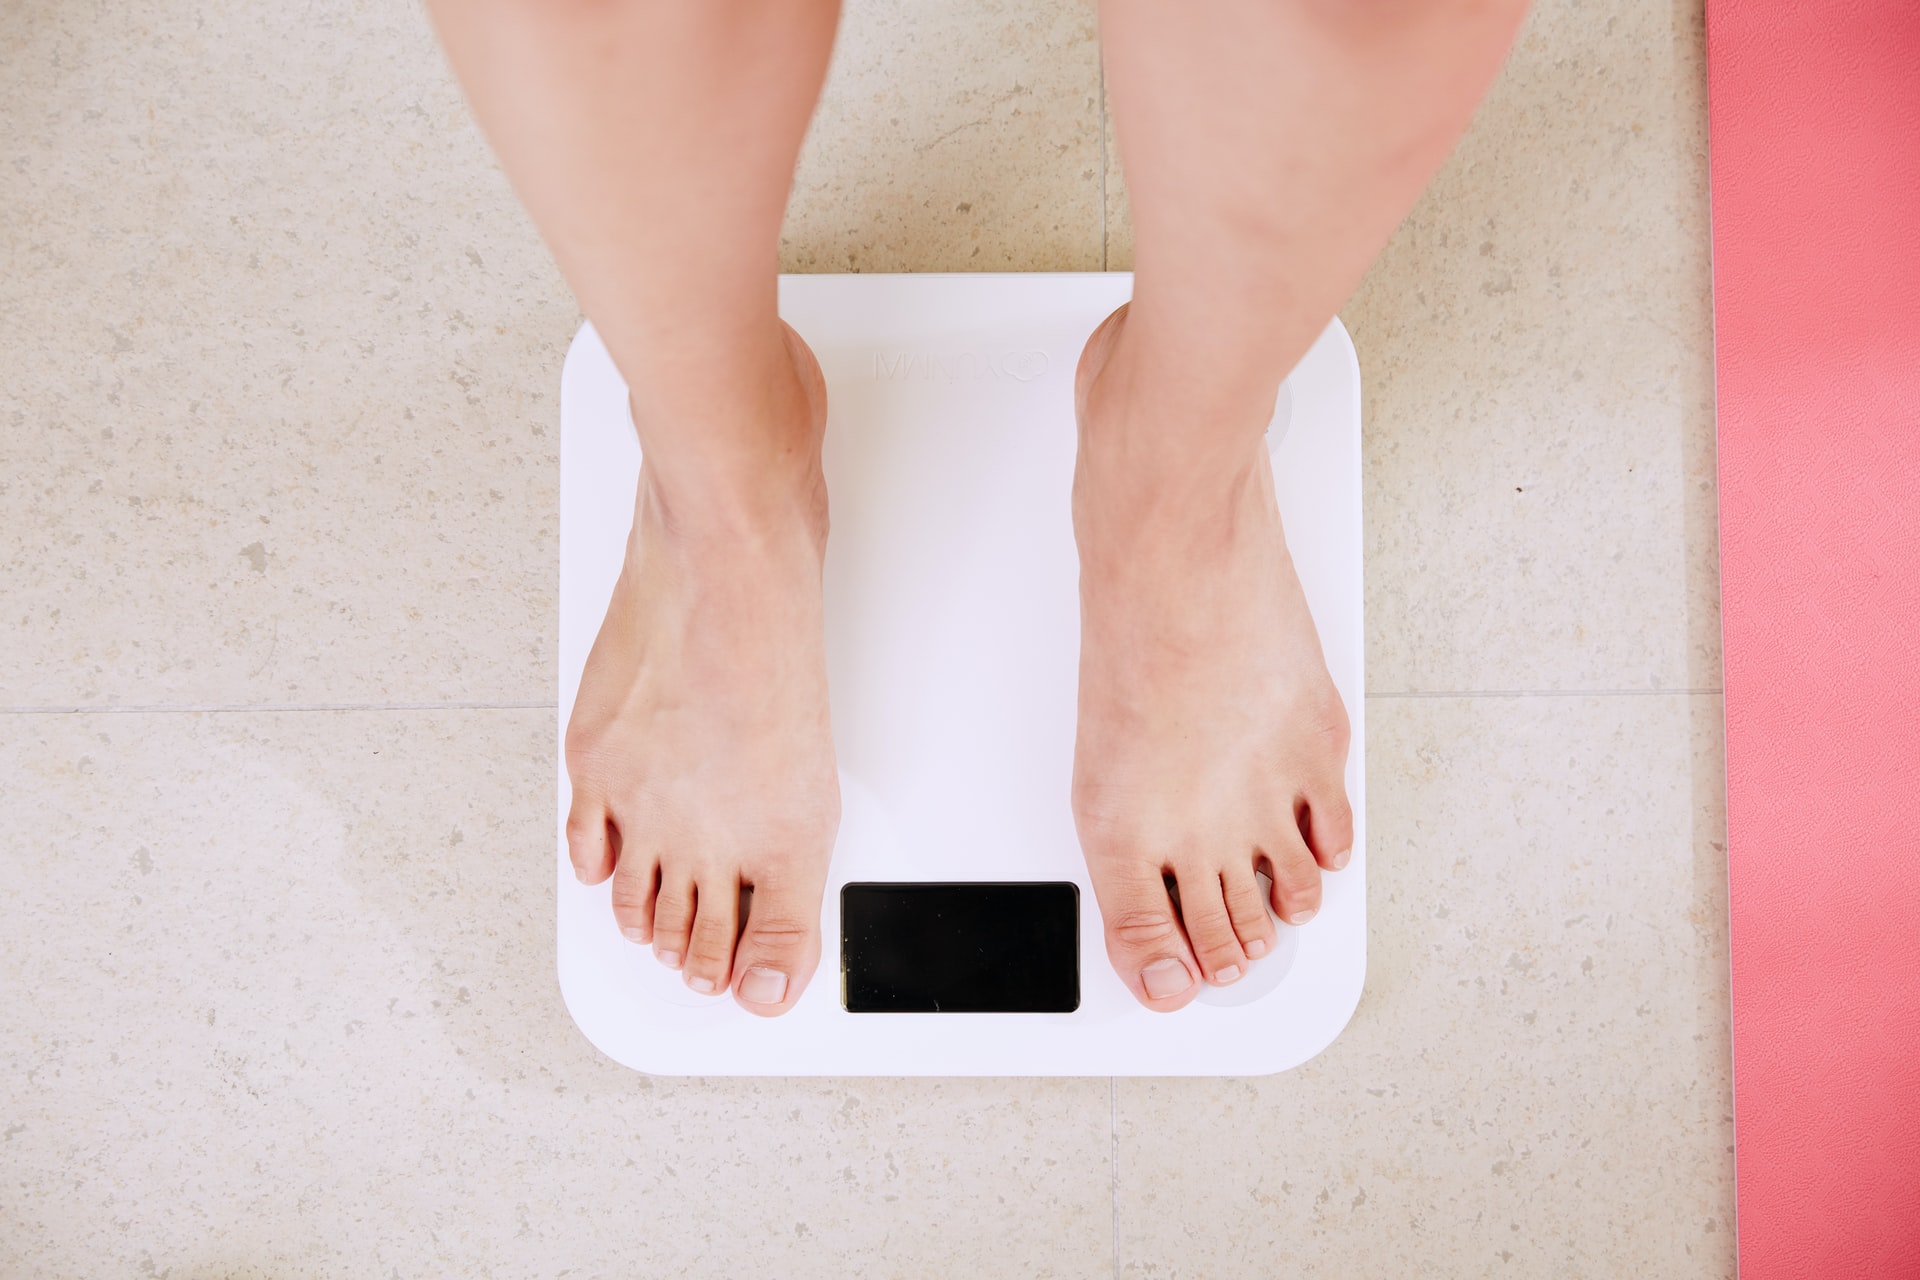 apakah puasa bisa menurunkan berat badan?